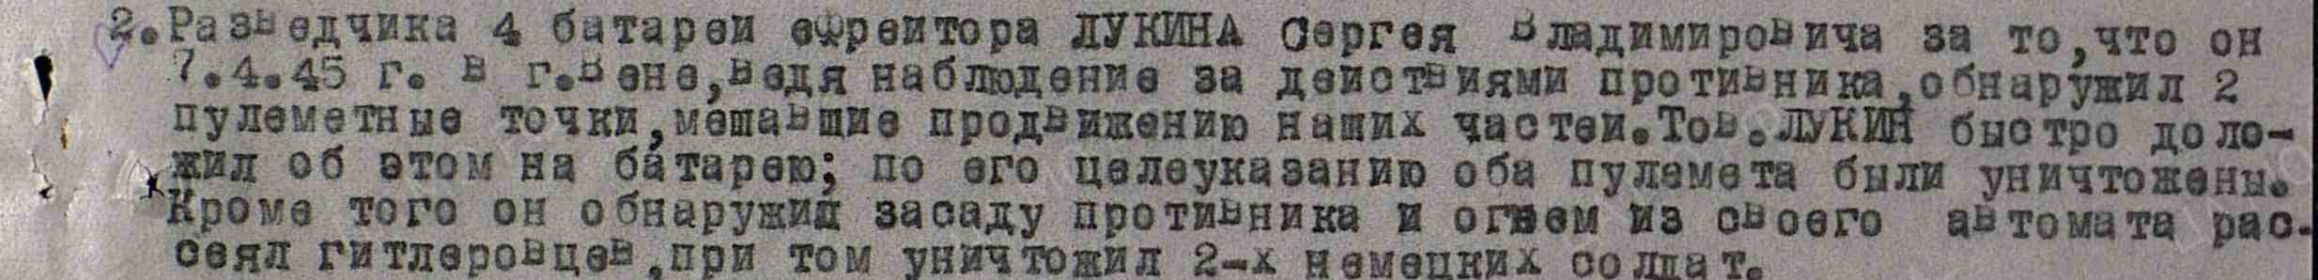 наградной лист 1945